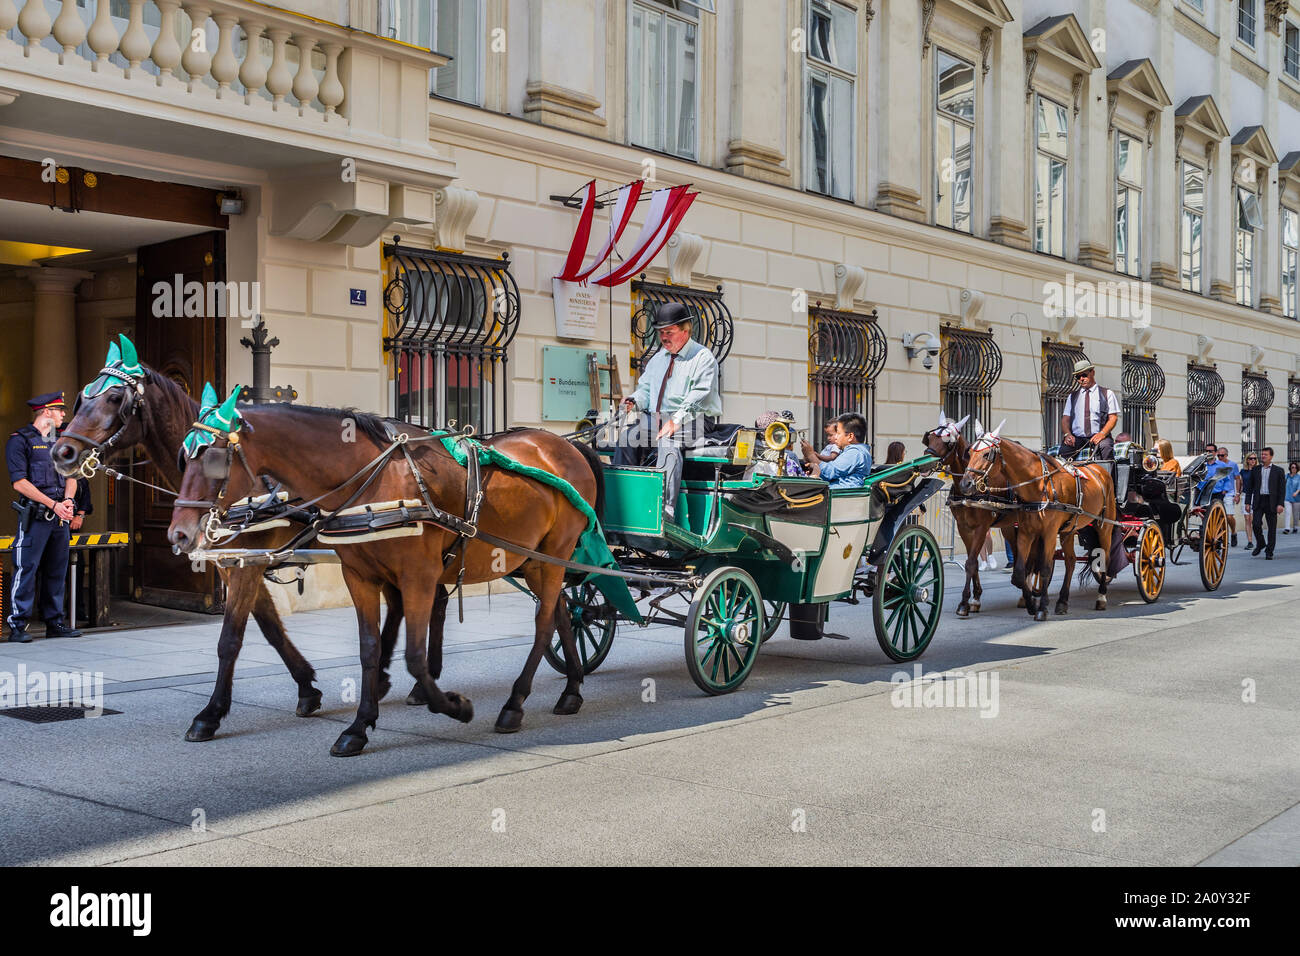 Pferdekutschen (FIAKER) Touristen entlang der Herrengasse, Wien, Österreich. Stockfoto